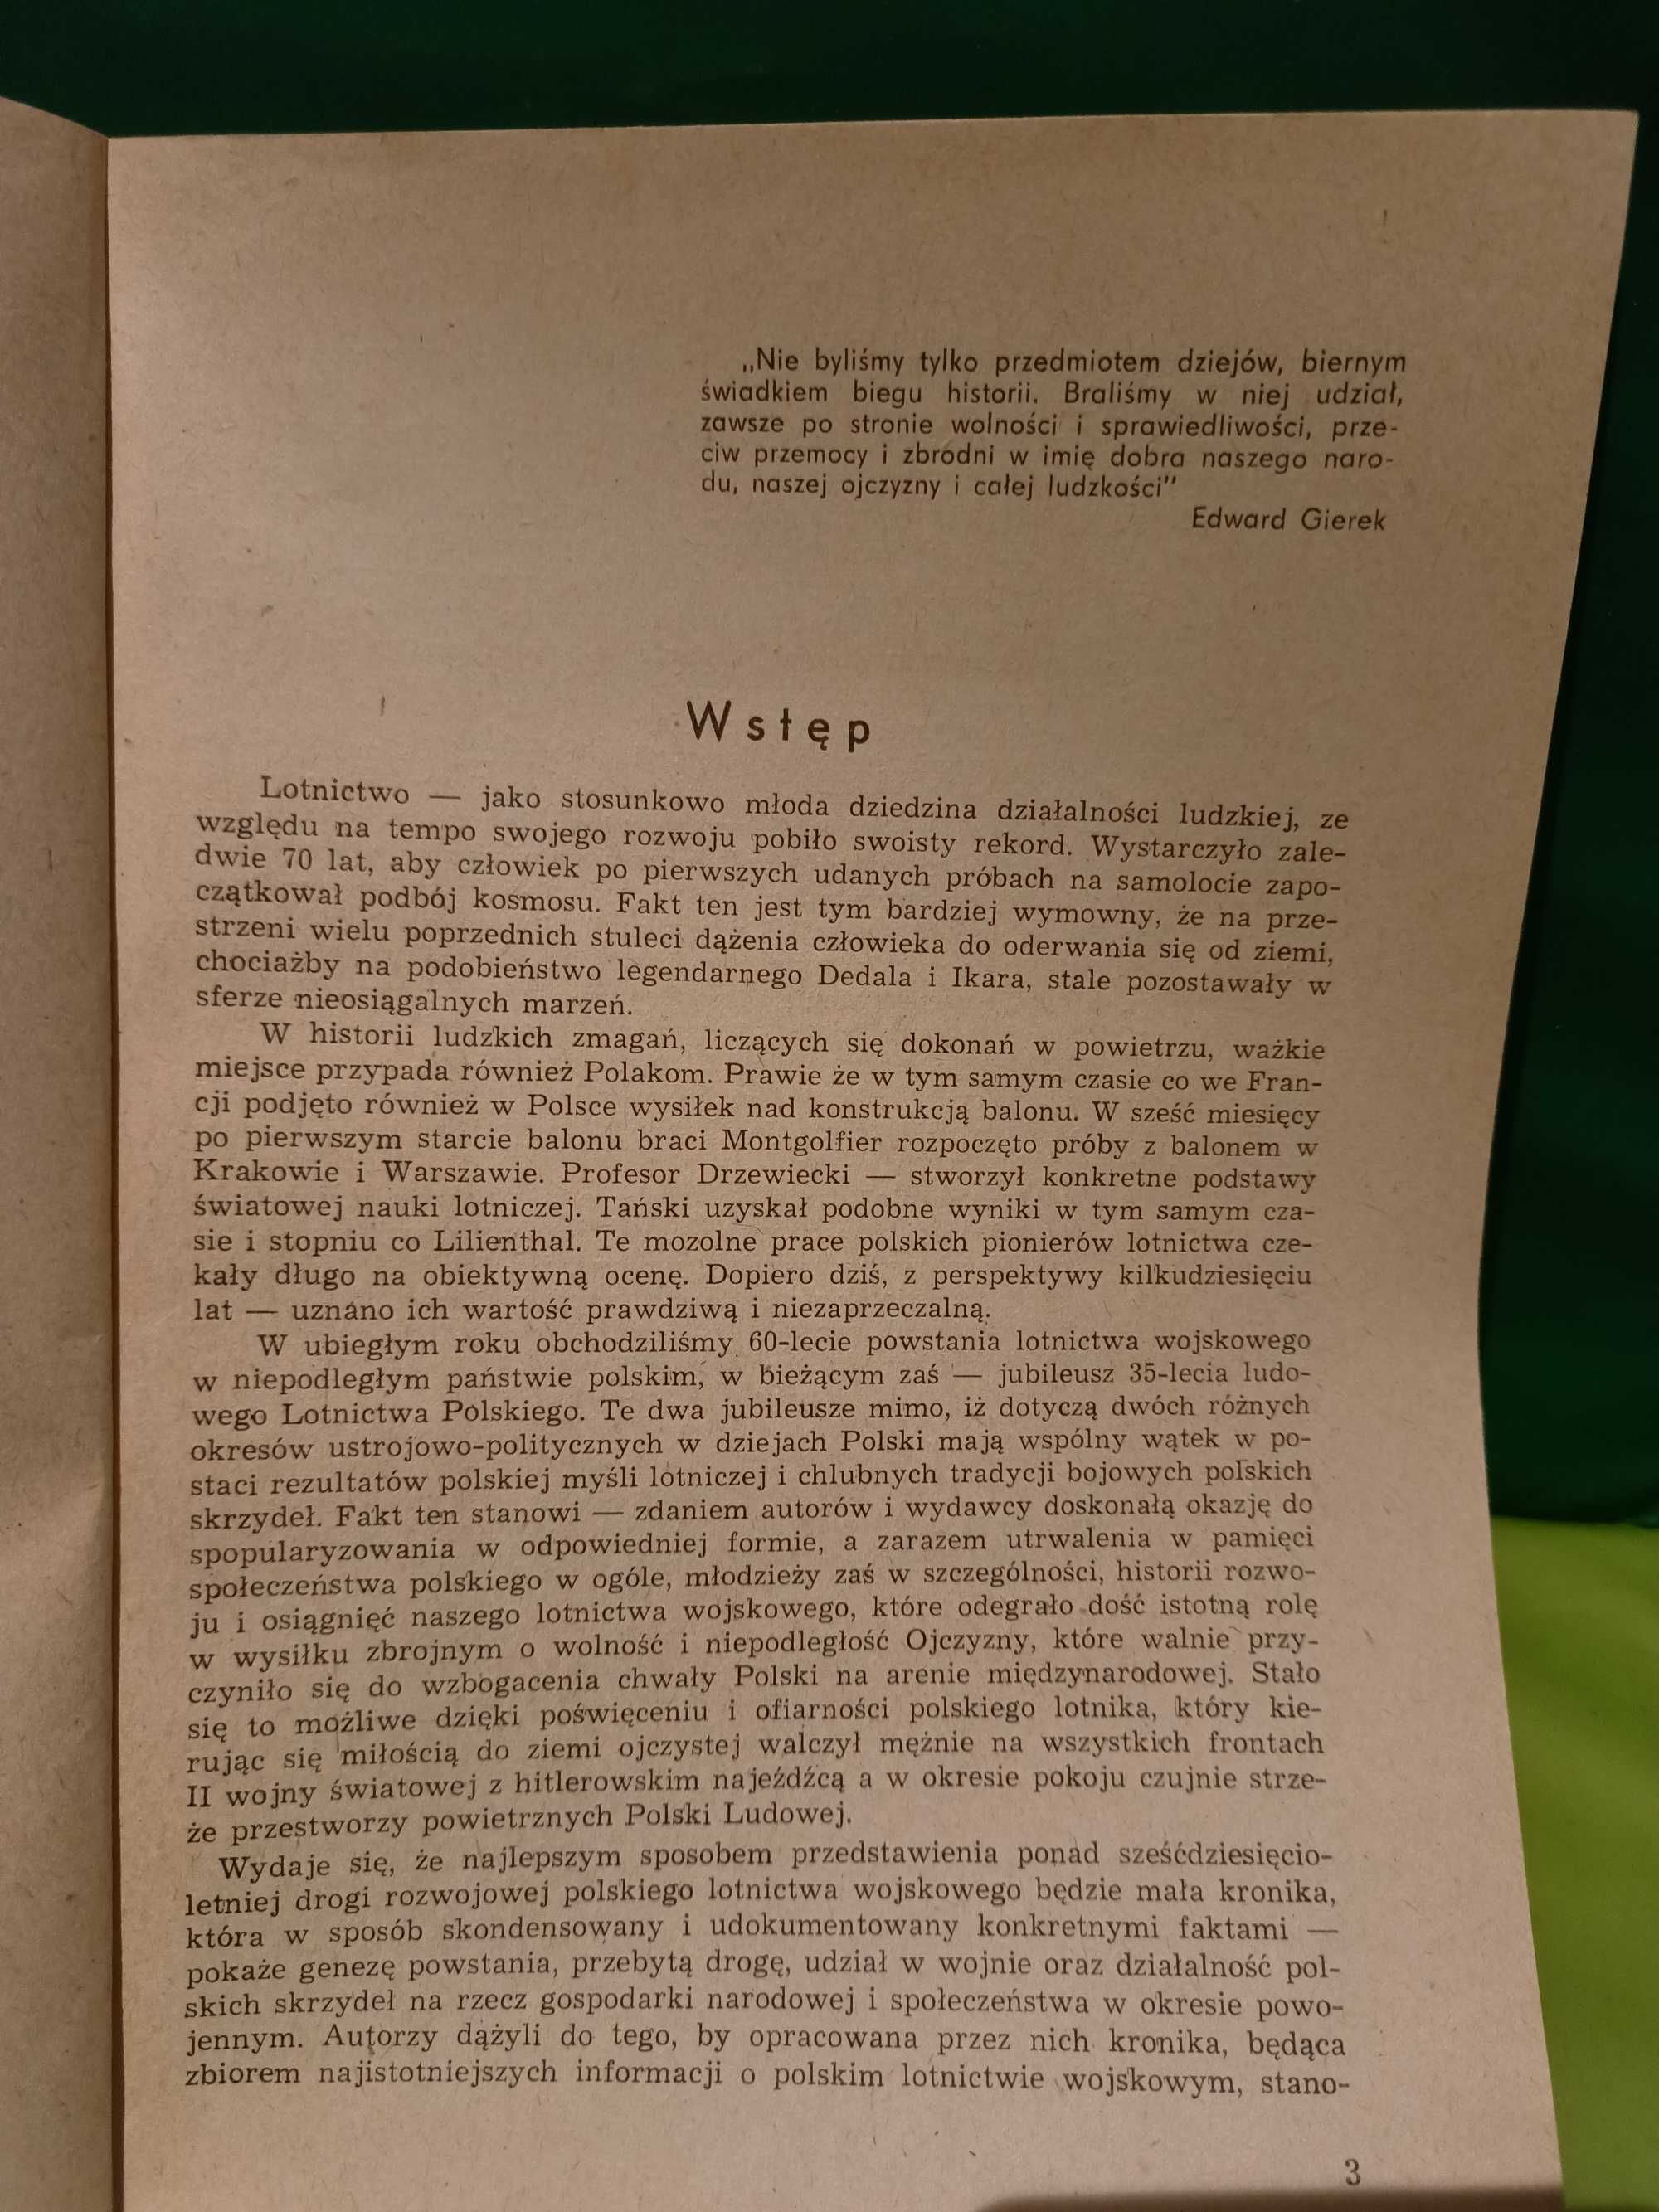 Mała Kronika Polskiego Lotnictwa Wojskowego autor Maciej Borkowski